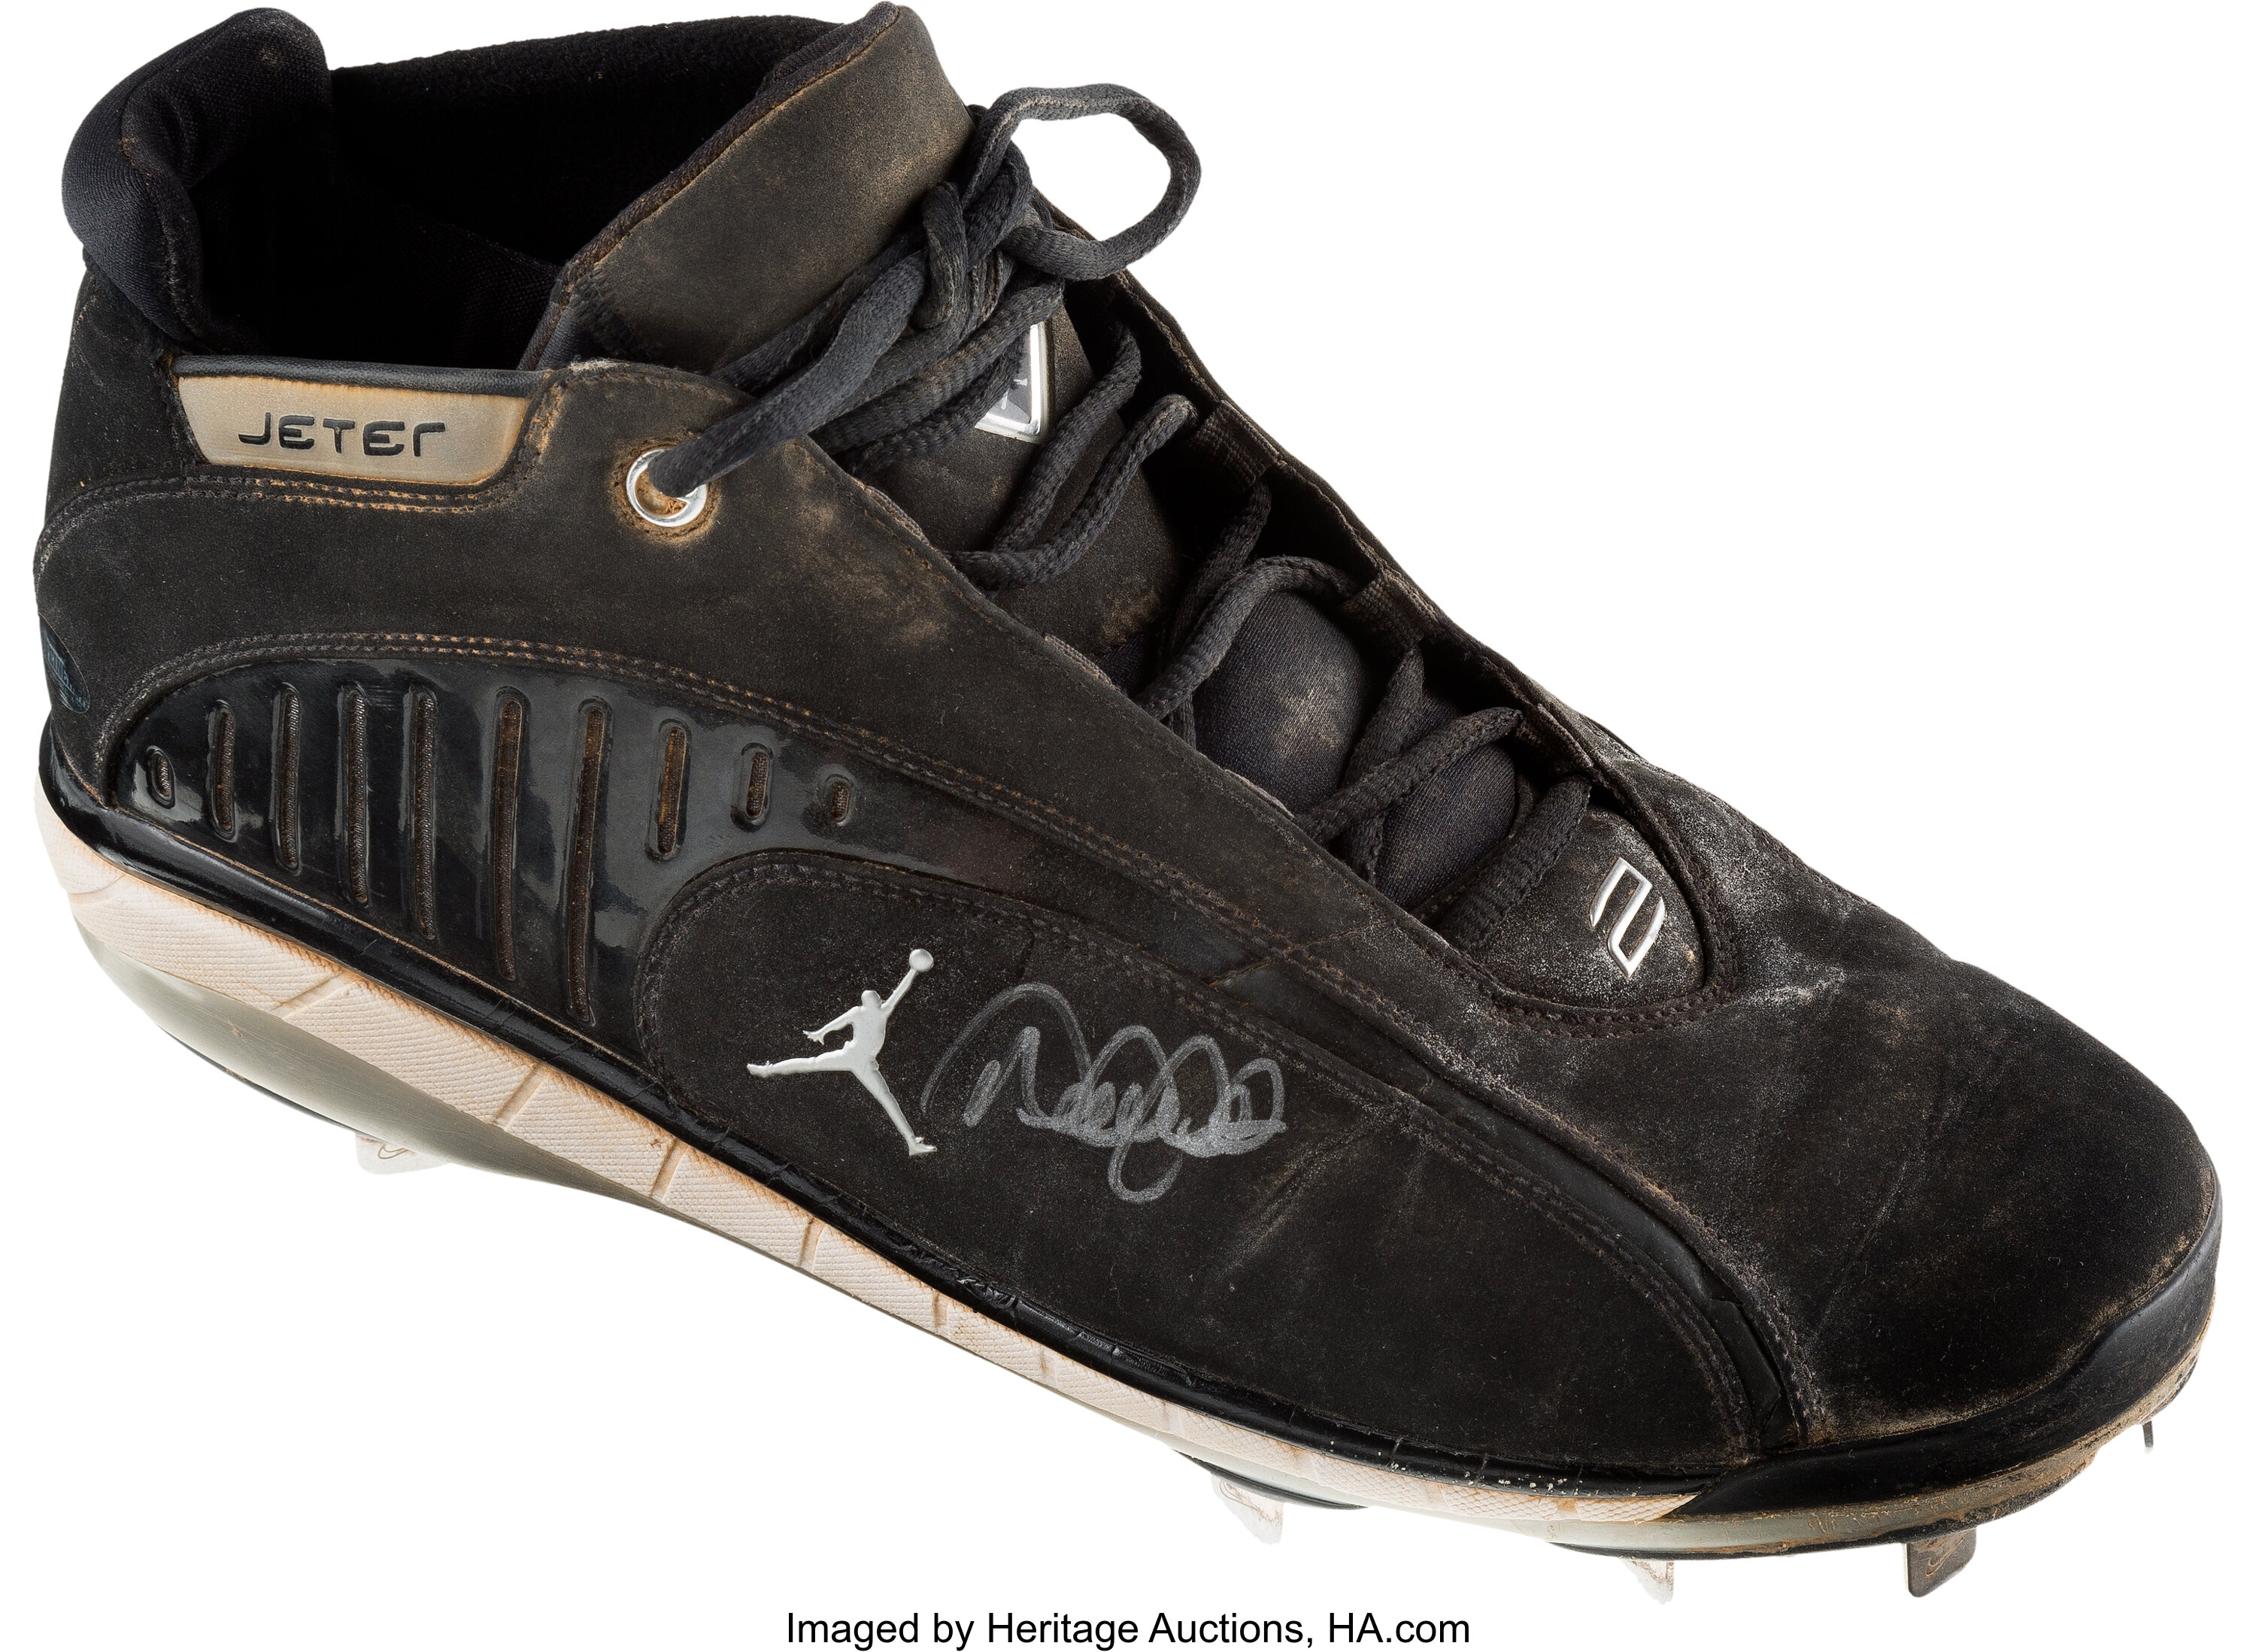 derek jeter shoes 2005